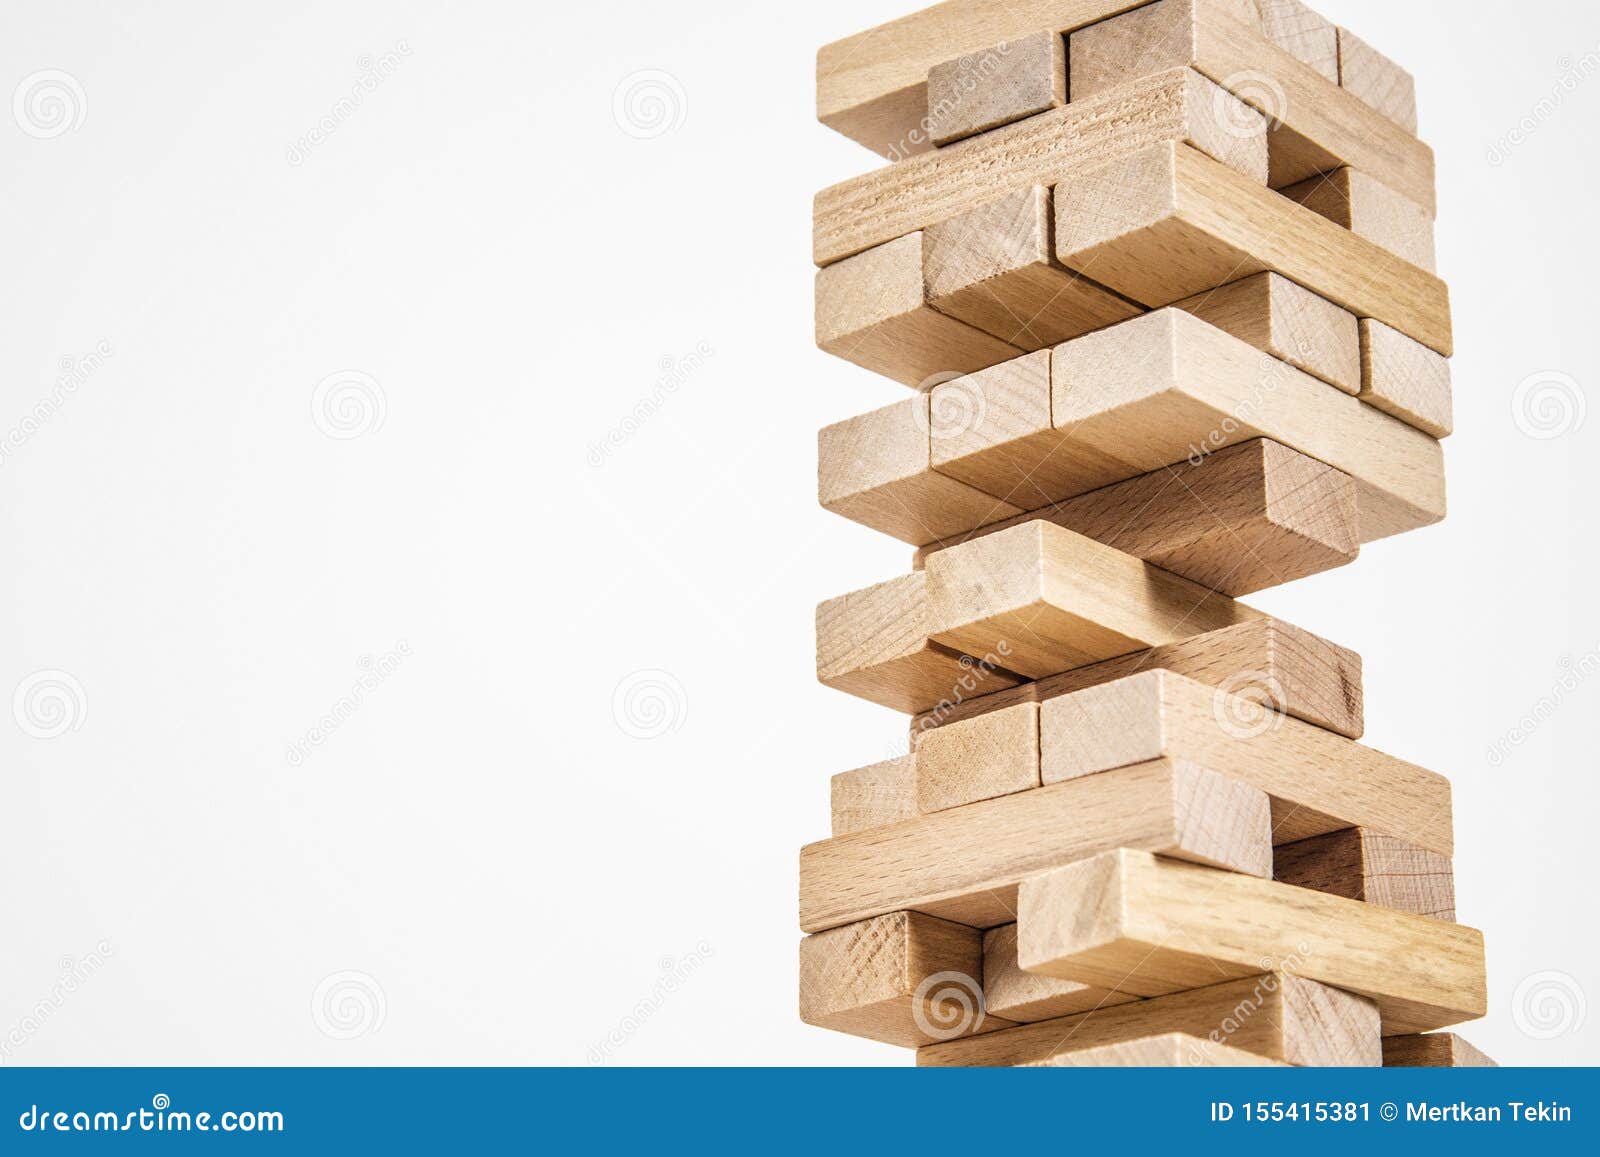 Wood blocks tower game là một trò chơi đơn giản nhưng đầy phấn khích. Nhiệm vụ của bạn là xếp các khối gỗ lên nhau để tạo thành một tháp cao theo cách mà bạn muốn. Với tính năng đồ họa đẹp mắt và hiệu ứng âm thanh tuyệt vời, bạn sẽ không biết mình đã chơi trong bao giờ.